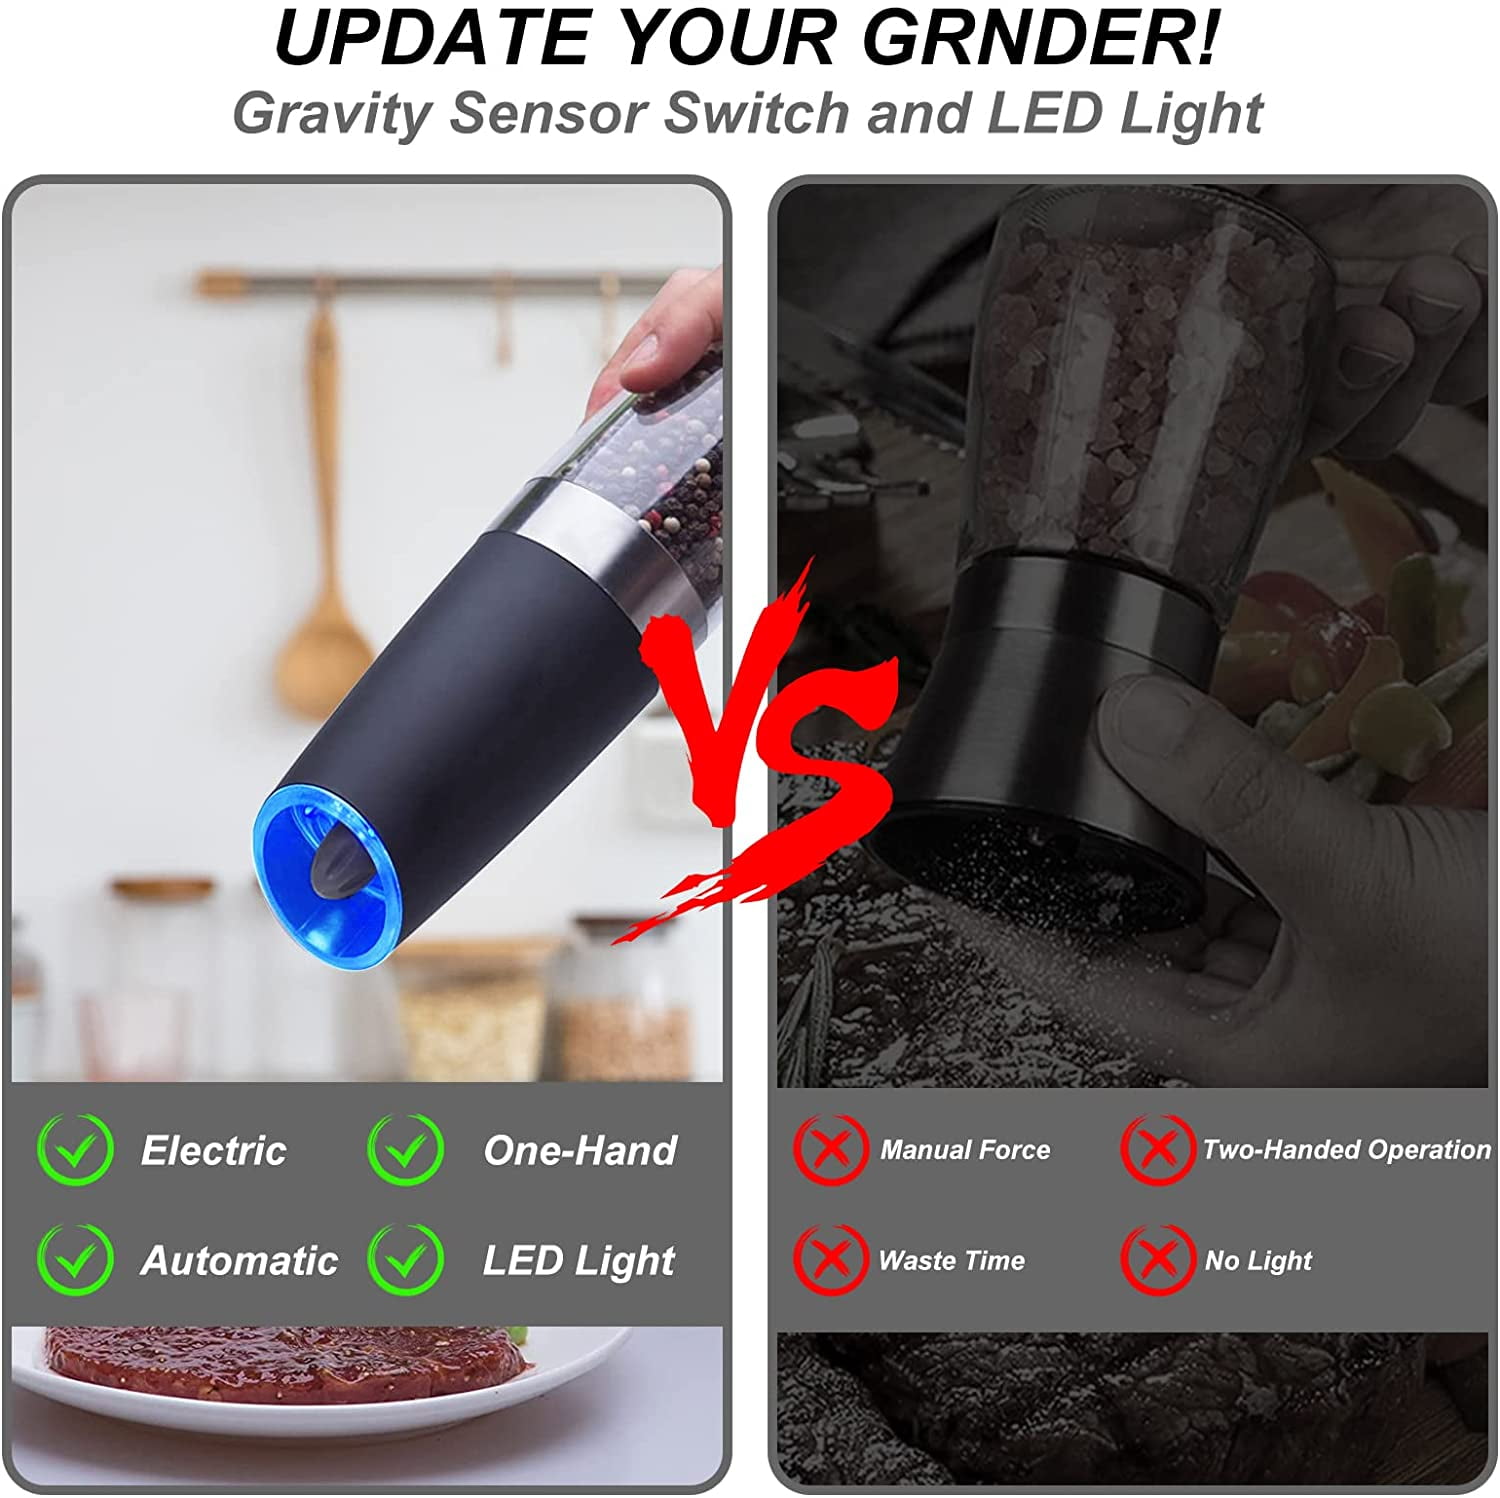 Homaider Electric Salt and Pepper Grinder Set